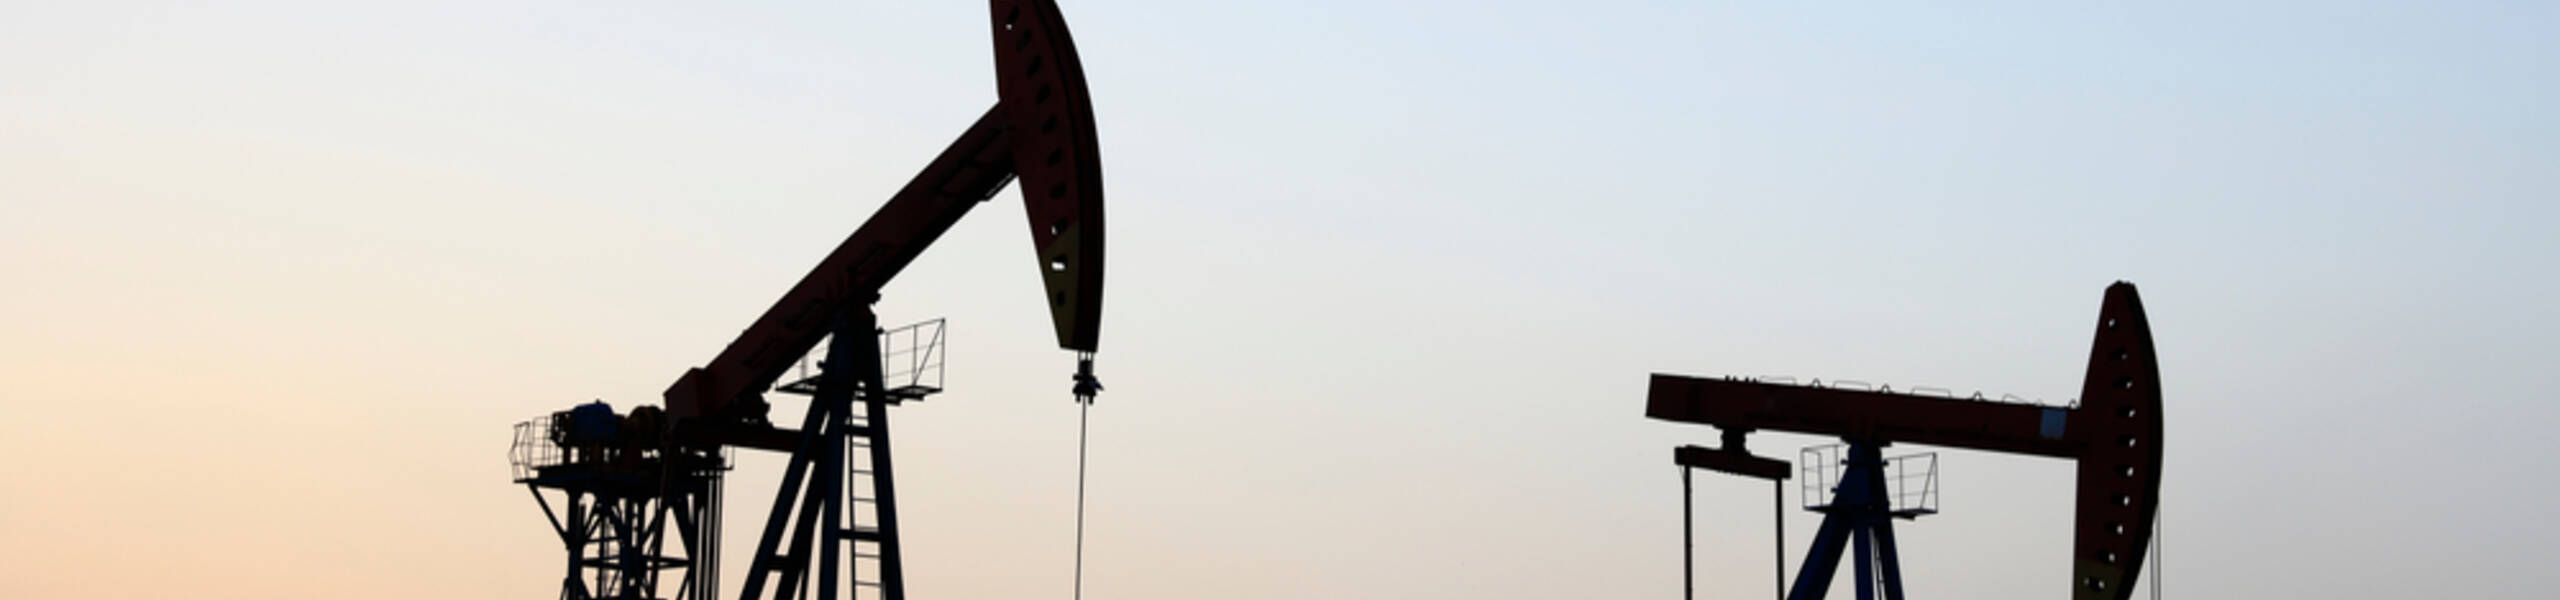 ما الذي ينتظر أسعار النفط والغاز الطبيعي؟